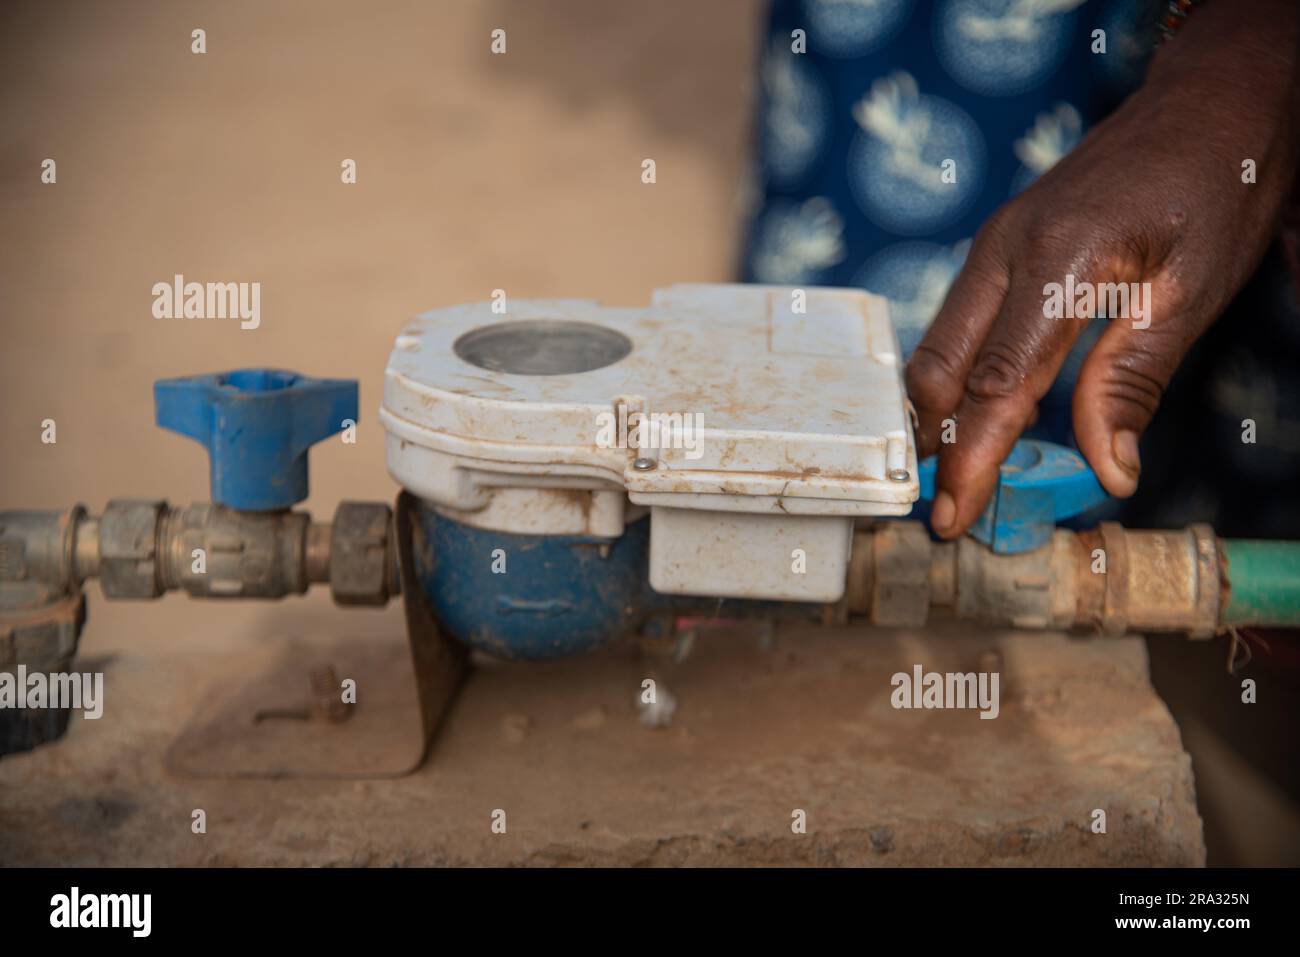 Nicolas Remene / le Pictorium - contatori prepagati e applicazione mobile in Niger - 29/5/2020 - Niger / Niamey / Niamey - nel distretto di Goudel Maourey a Niamey in Niger, sono stati installati contatori d'acqua "intelligenti" che consentono a ciascuna famiglia di pagare il consumo di acqua man mano che si verifica, utilizzo di un telefono cellulare e di un'applicazione. Questo tipo di contatore prepagato consente ai residenti locali di regolare il loro consumo in base al loro reddito. Ciò consente di offrire l'accesso all'acqua potabile a casa a un costo inferiore, con un sistema di pagamento anticipato adattato ai redditi irregolari di gran parte d Foto Stock